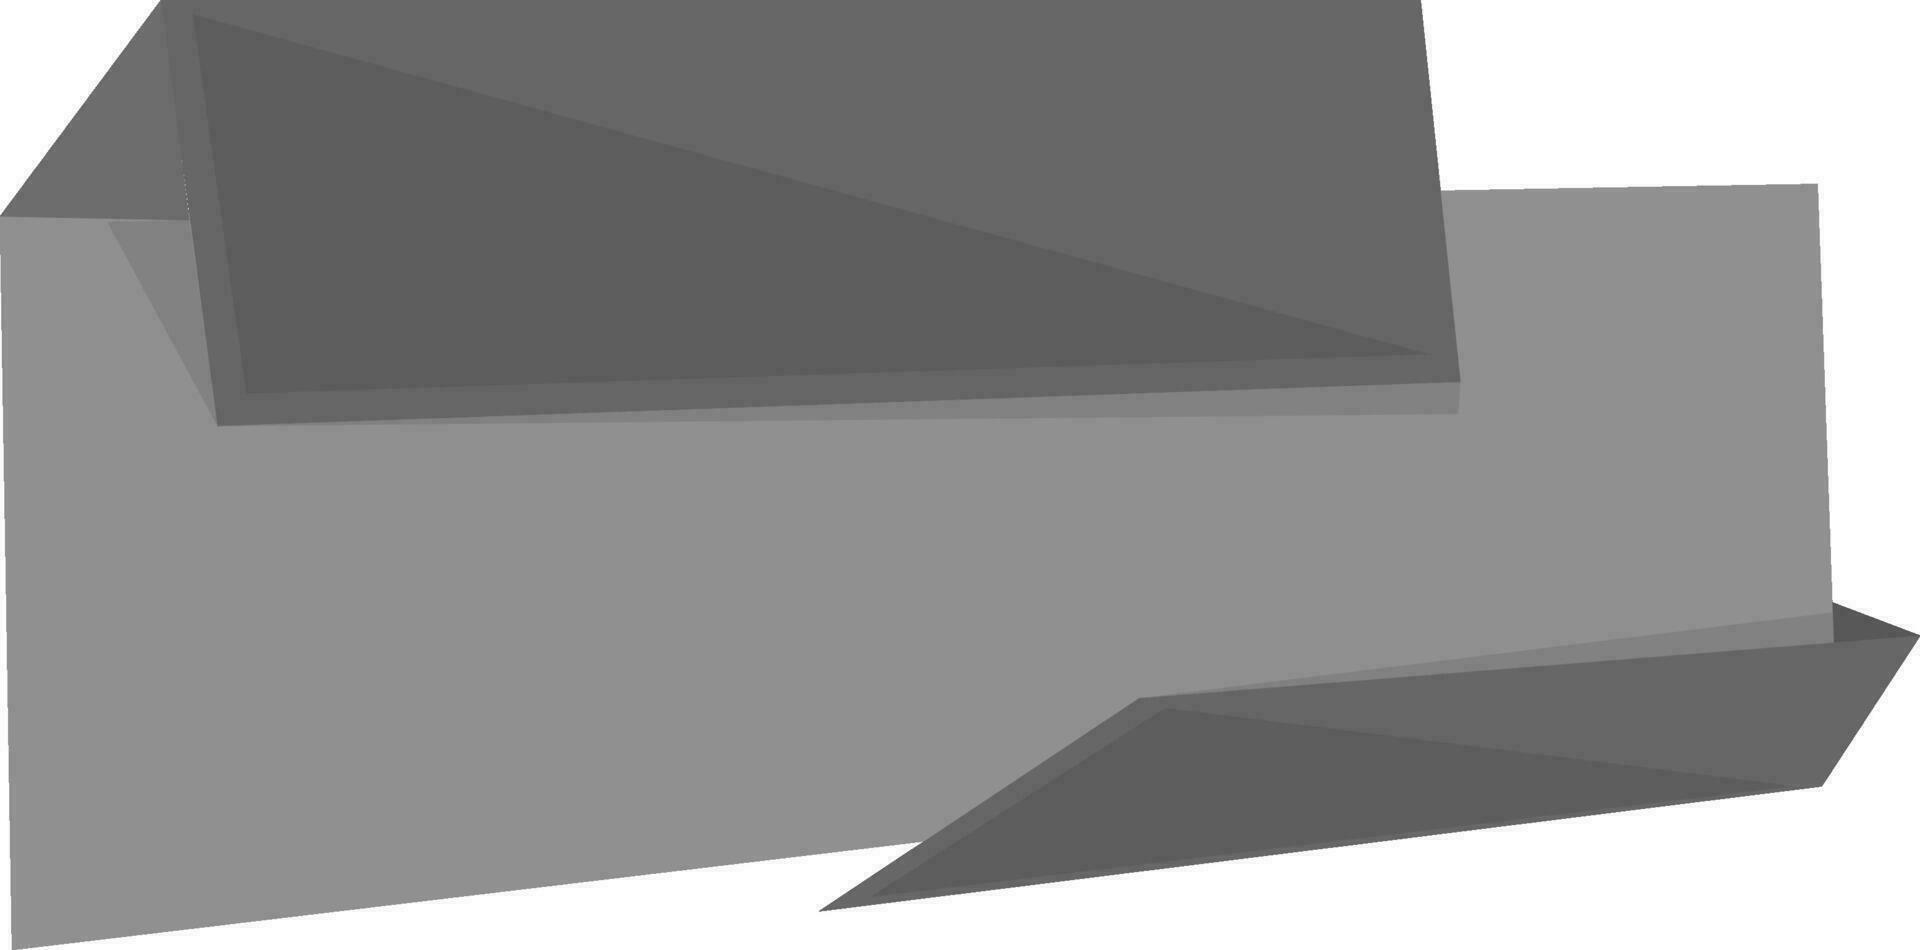 Stylish gray and black ribbon. vector